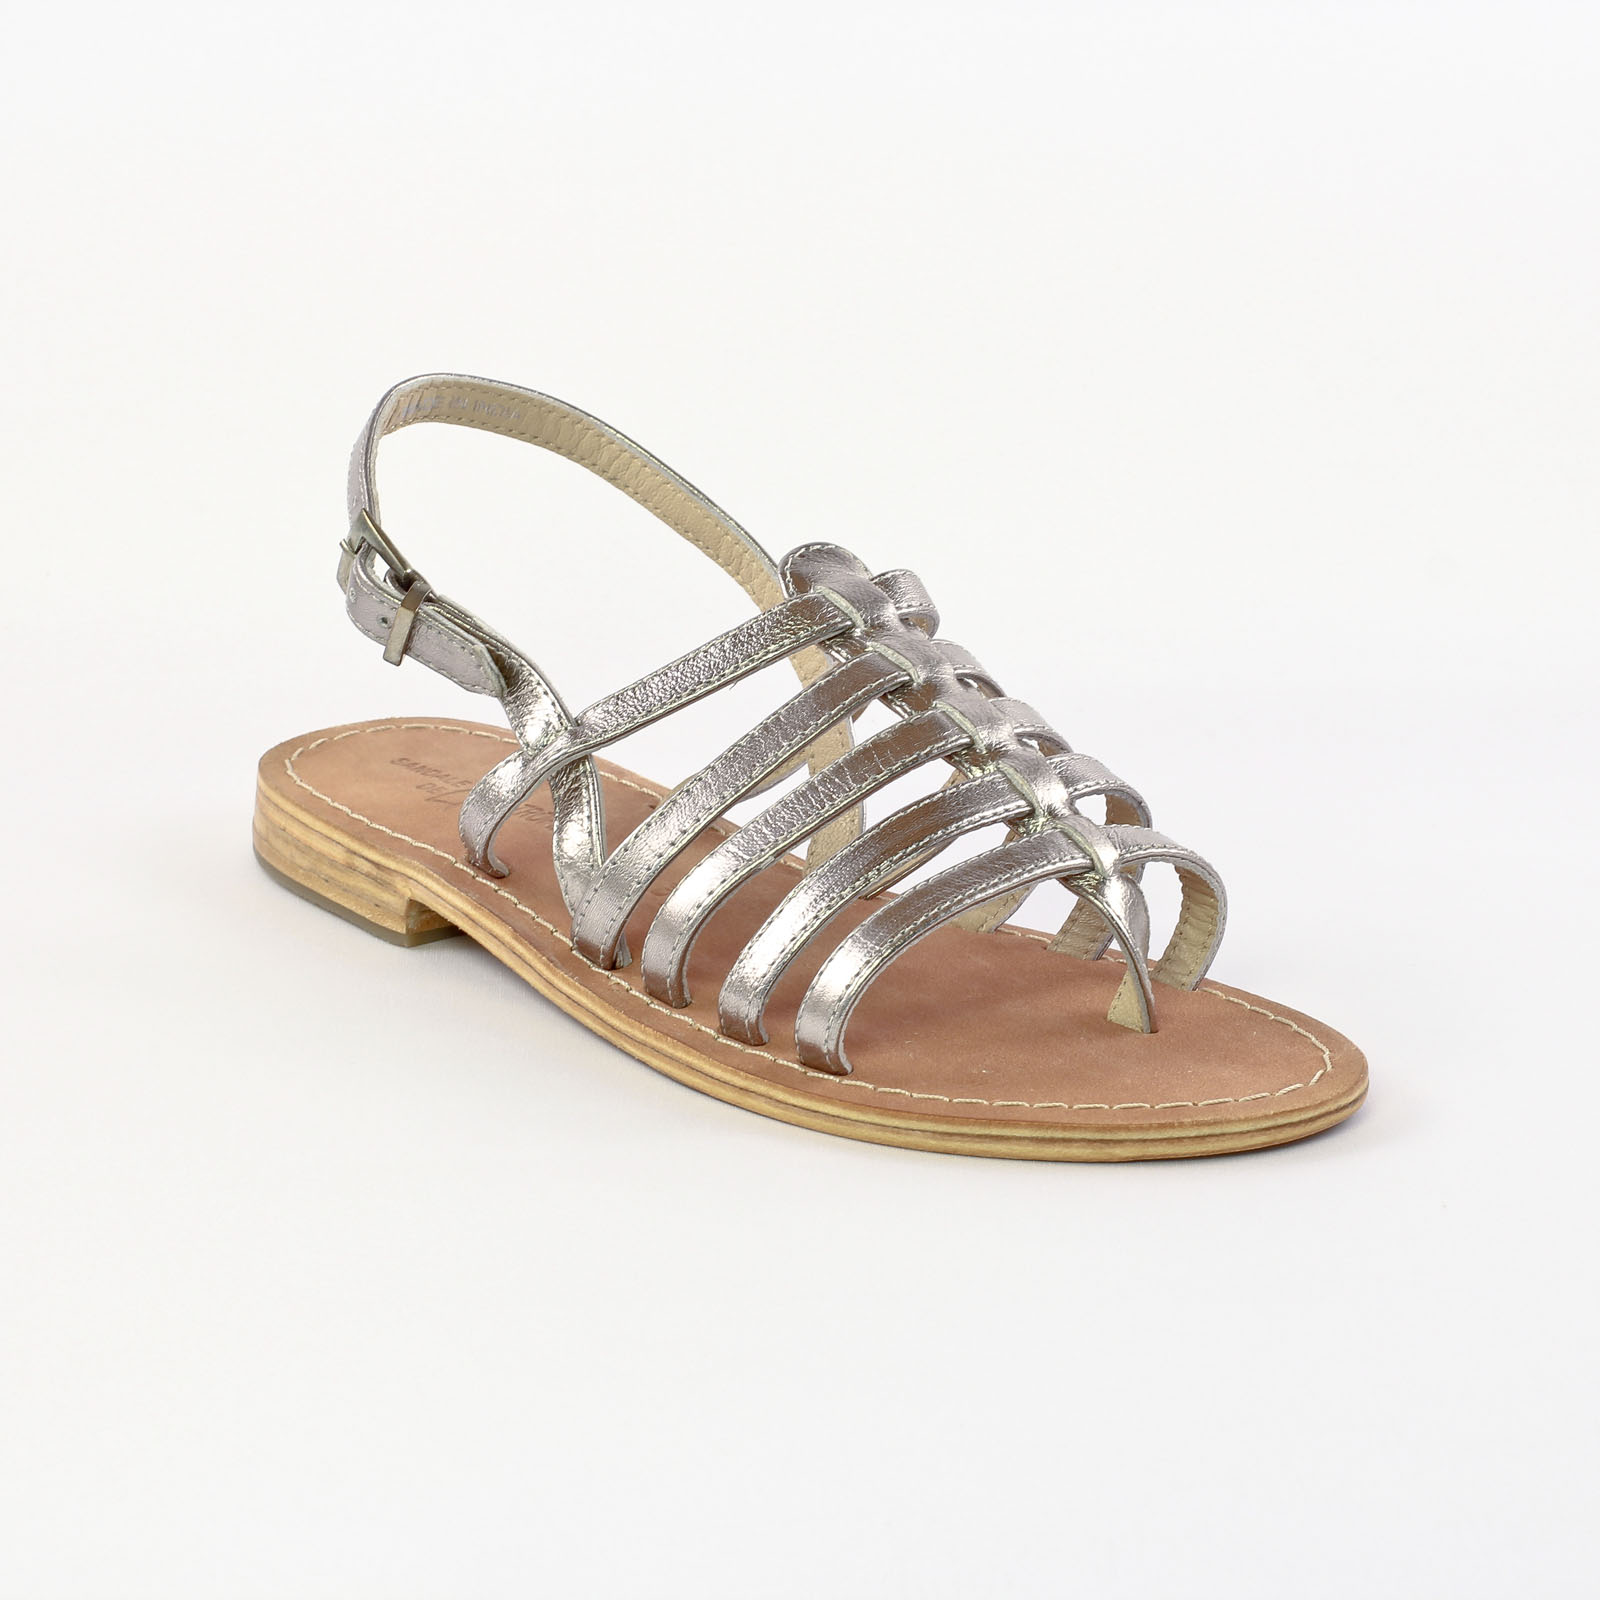 Sandales de la marque Sandale De St Tropez de couleur gris acier . La ...